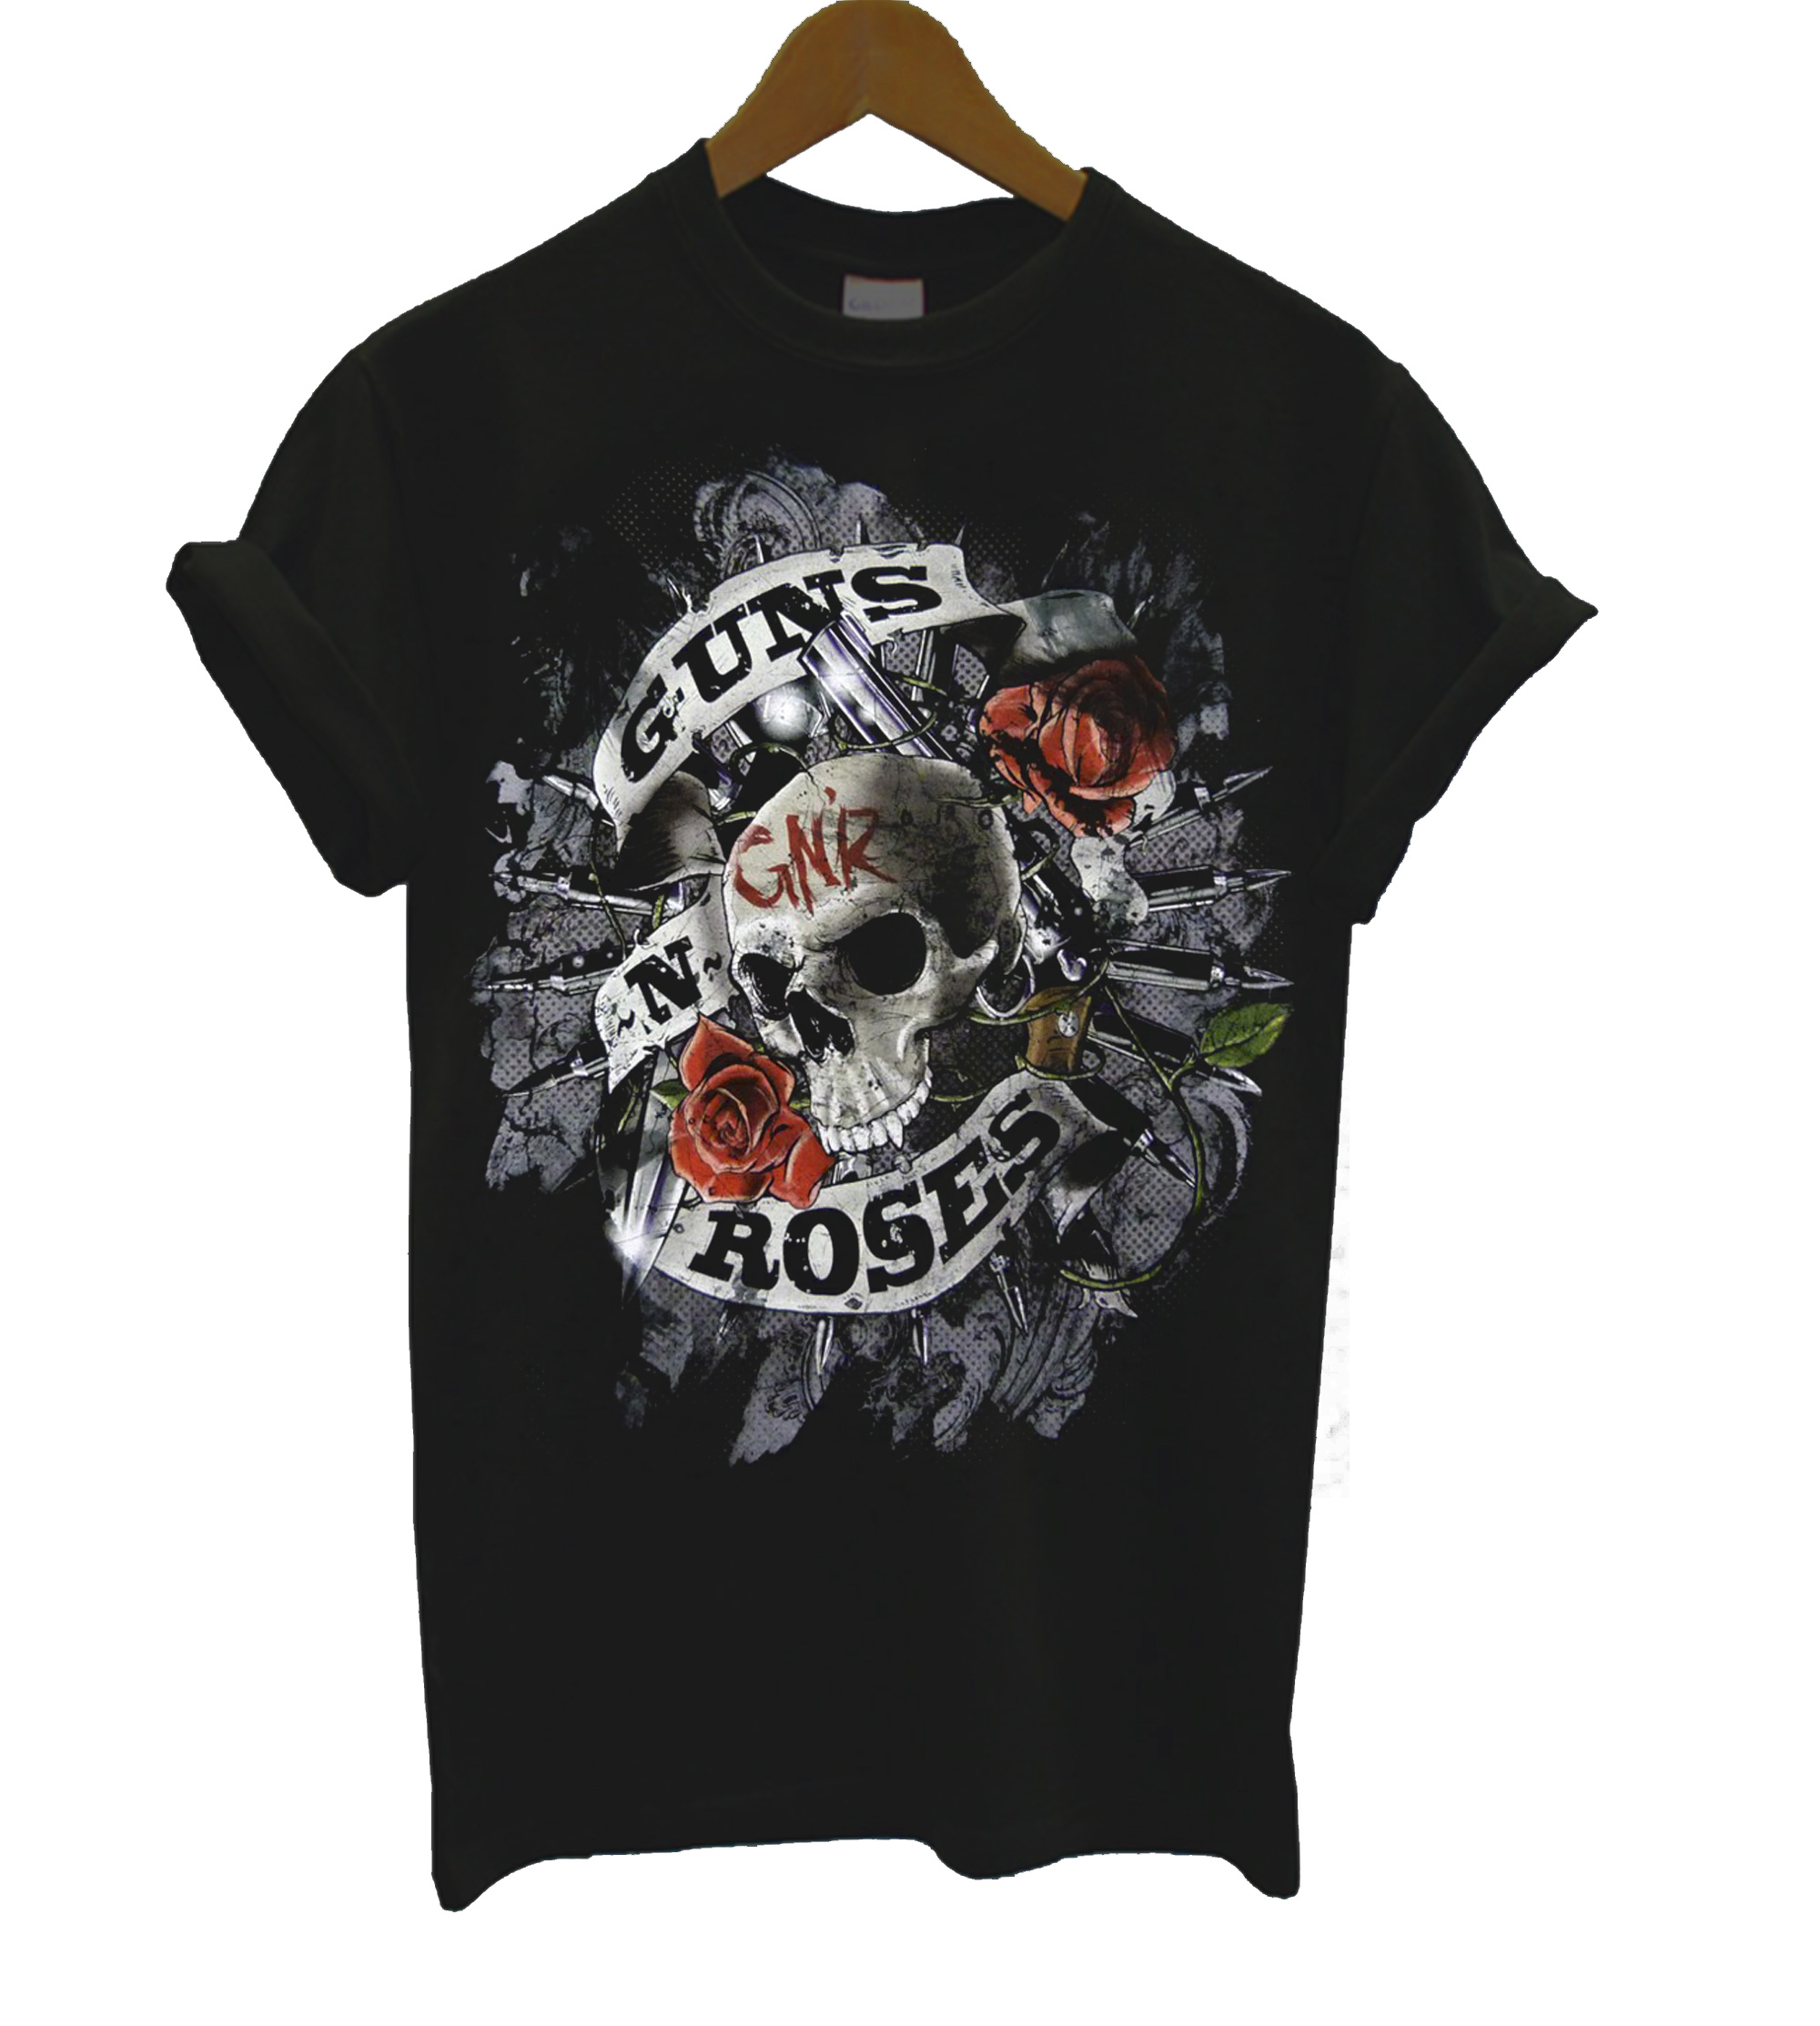 Guns N Roses GNR T Shirt